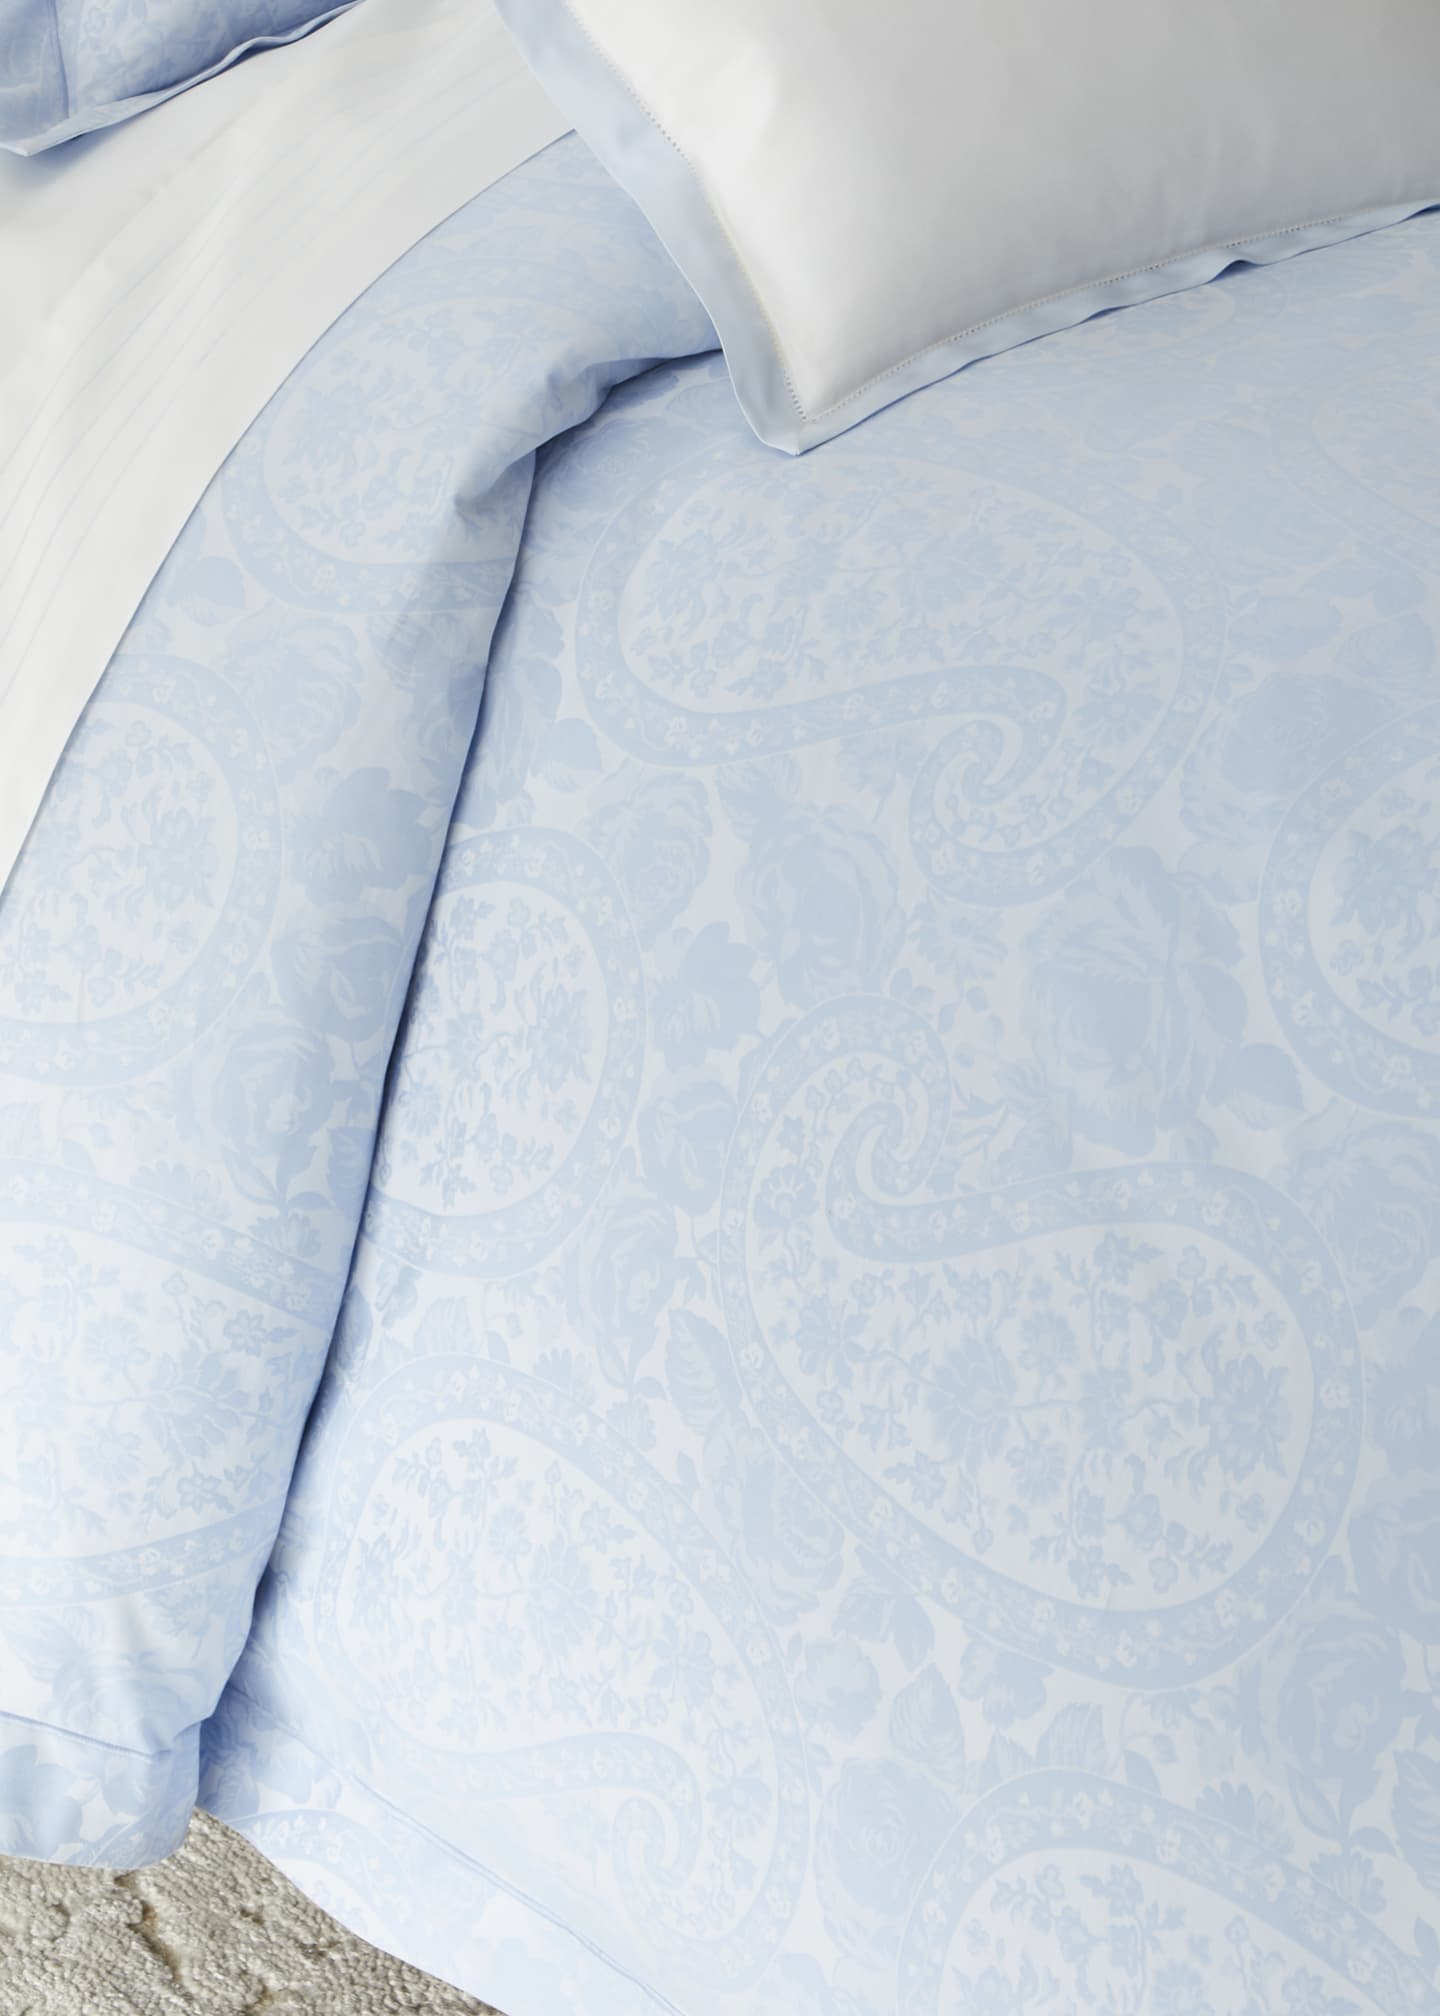 Ralph Lauren Home Aubree Paisley Full Queen Comforter - Bergdorf Goodman